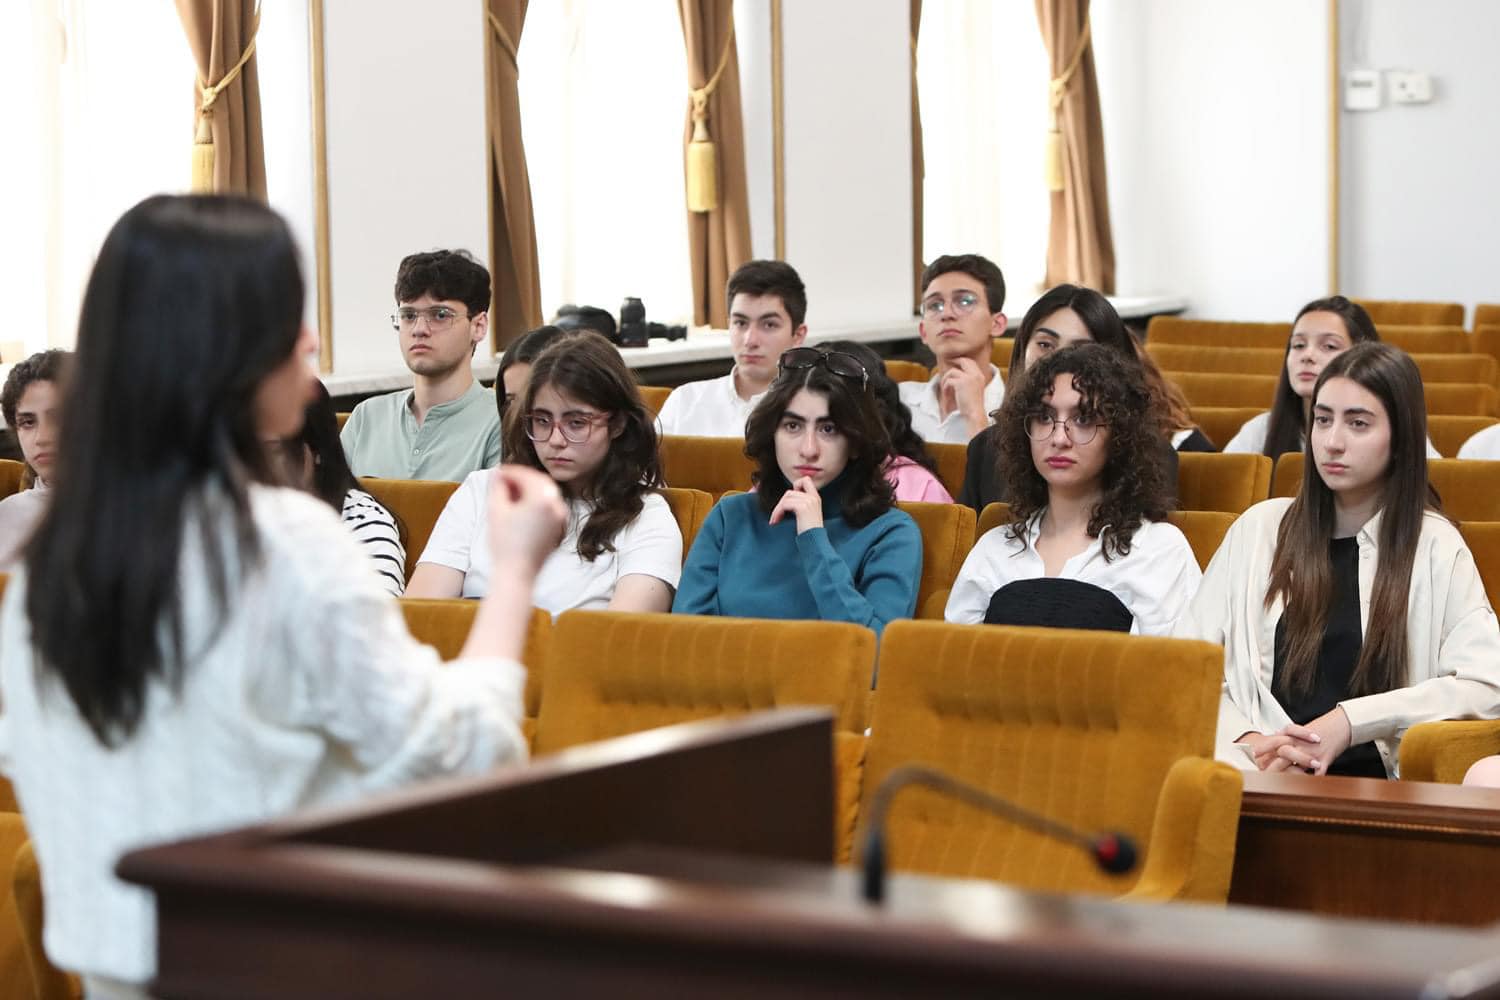 Հայ-Ռուսական Համալսարանի դպրոցի  11-րդ դասարանի աշակերտները  այցելեցին ՀՀ Սահմանադրական դատարան։